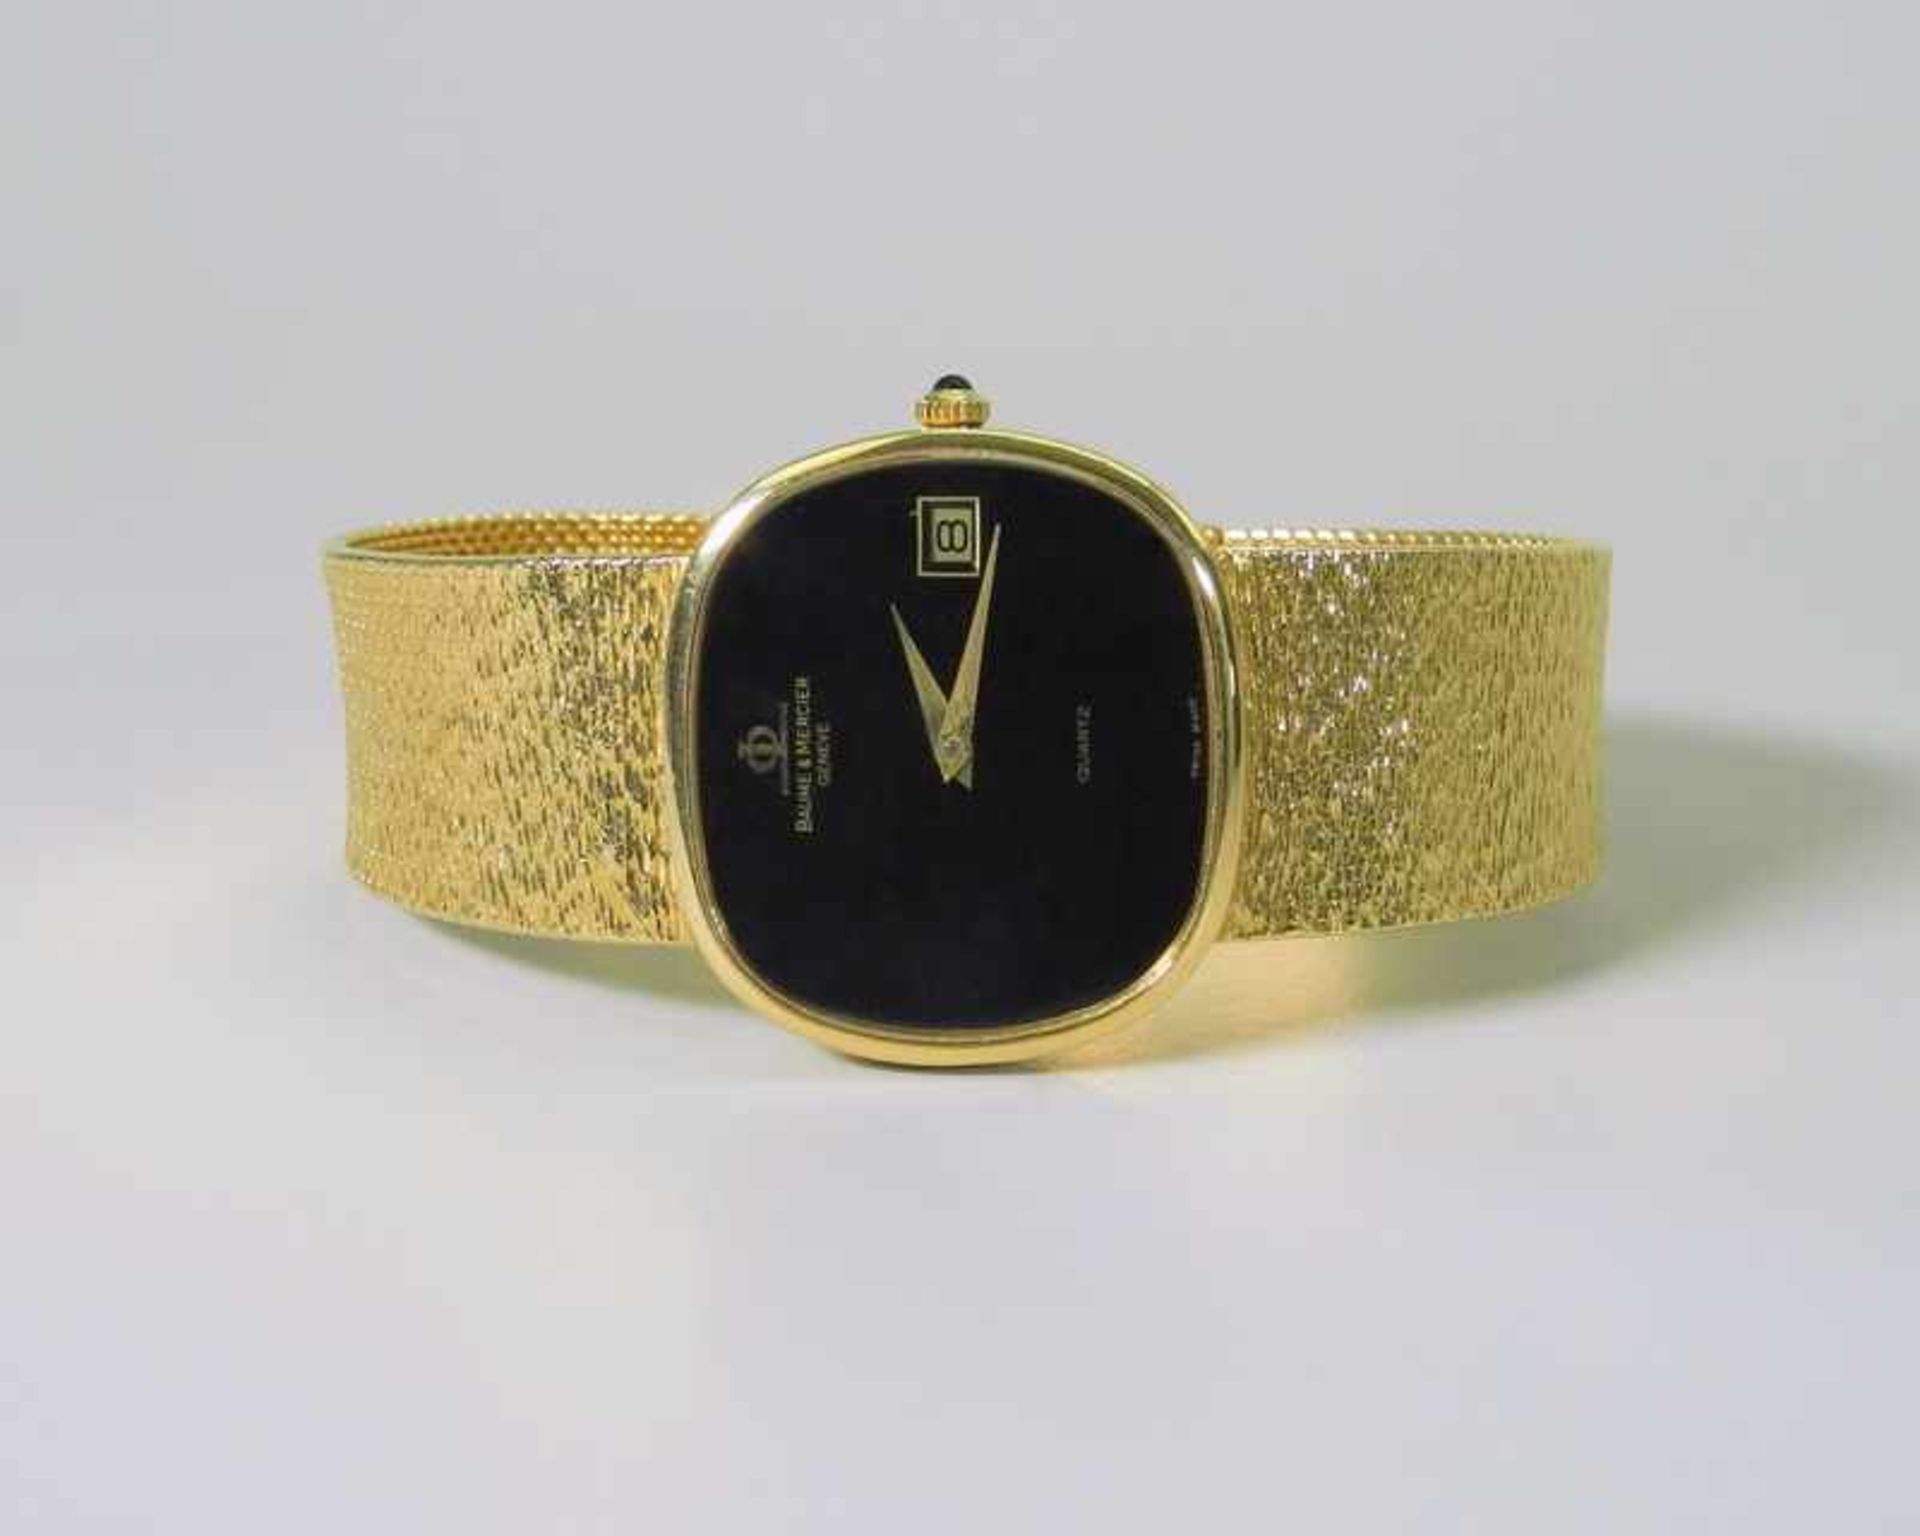 Baume & Mercier Armbanduhr18 K. gelbgoldene Armbanduhr von Baume & Mercier. Inkl.